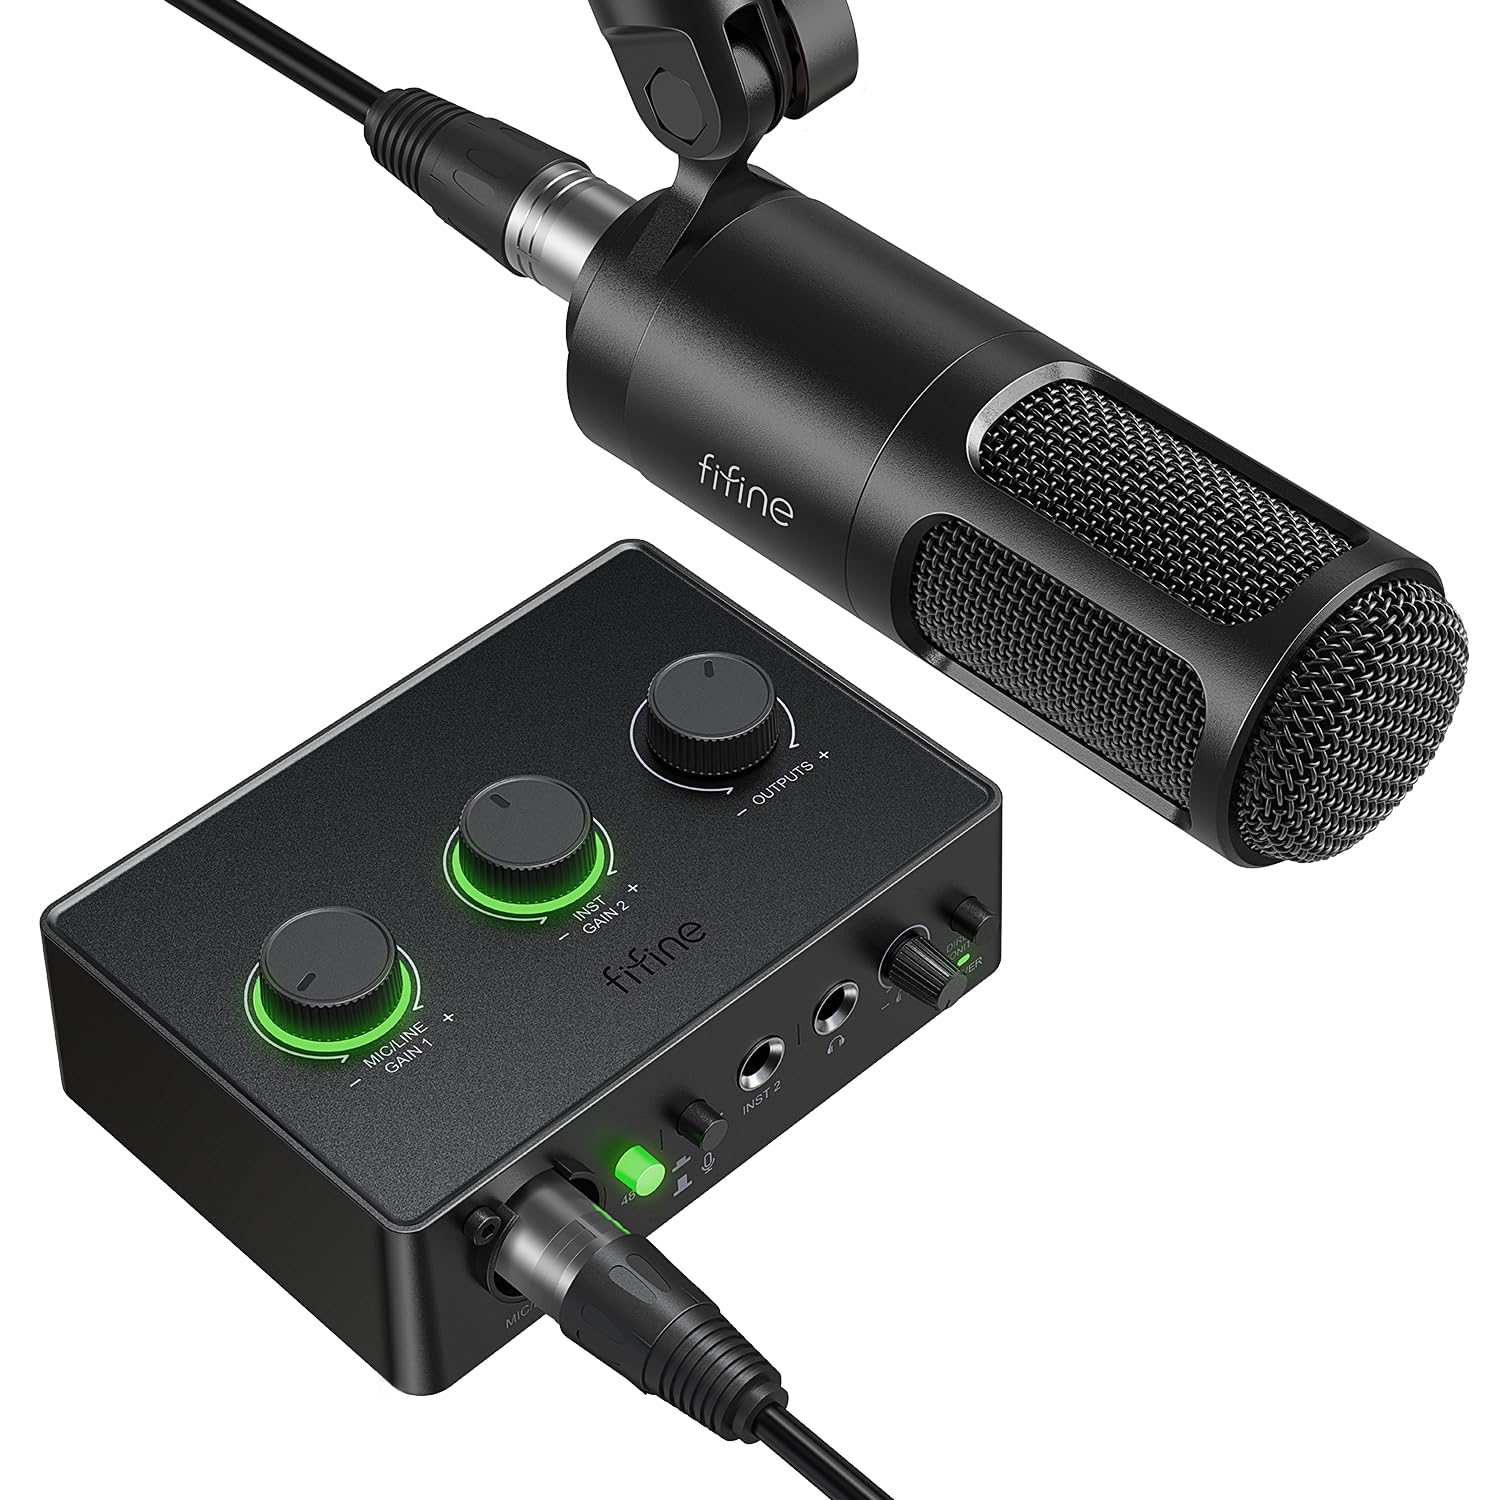 FIFINE Podcast Equipment Bundle Set, Musik Recording Kit mit Studio Dynamisches Mikrofon und USB Audio Mixer mit XLR Mic Eingang, Kopfhörerüberwachung, Lautstärkeregler für Gesang/Voice Over-AmpliTank